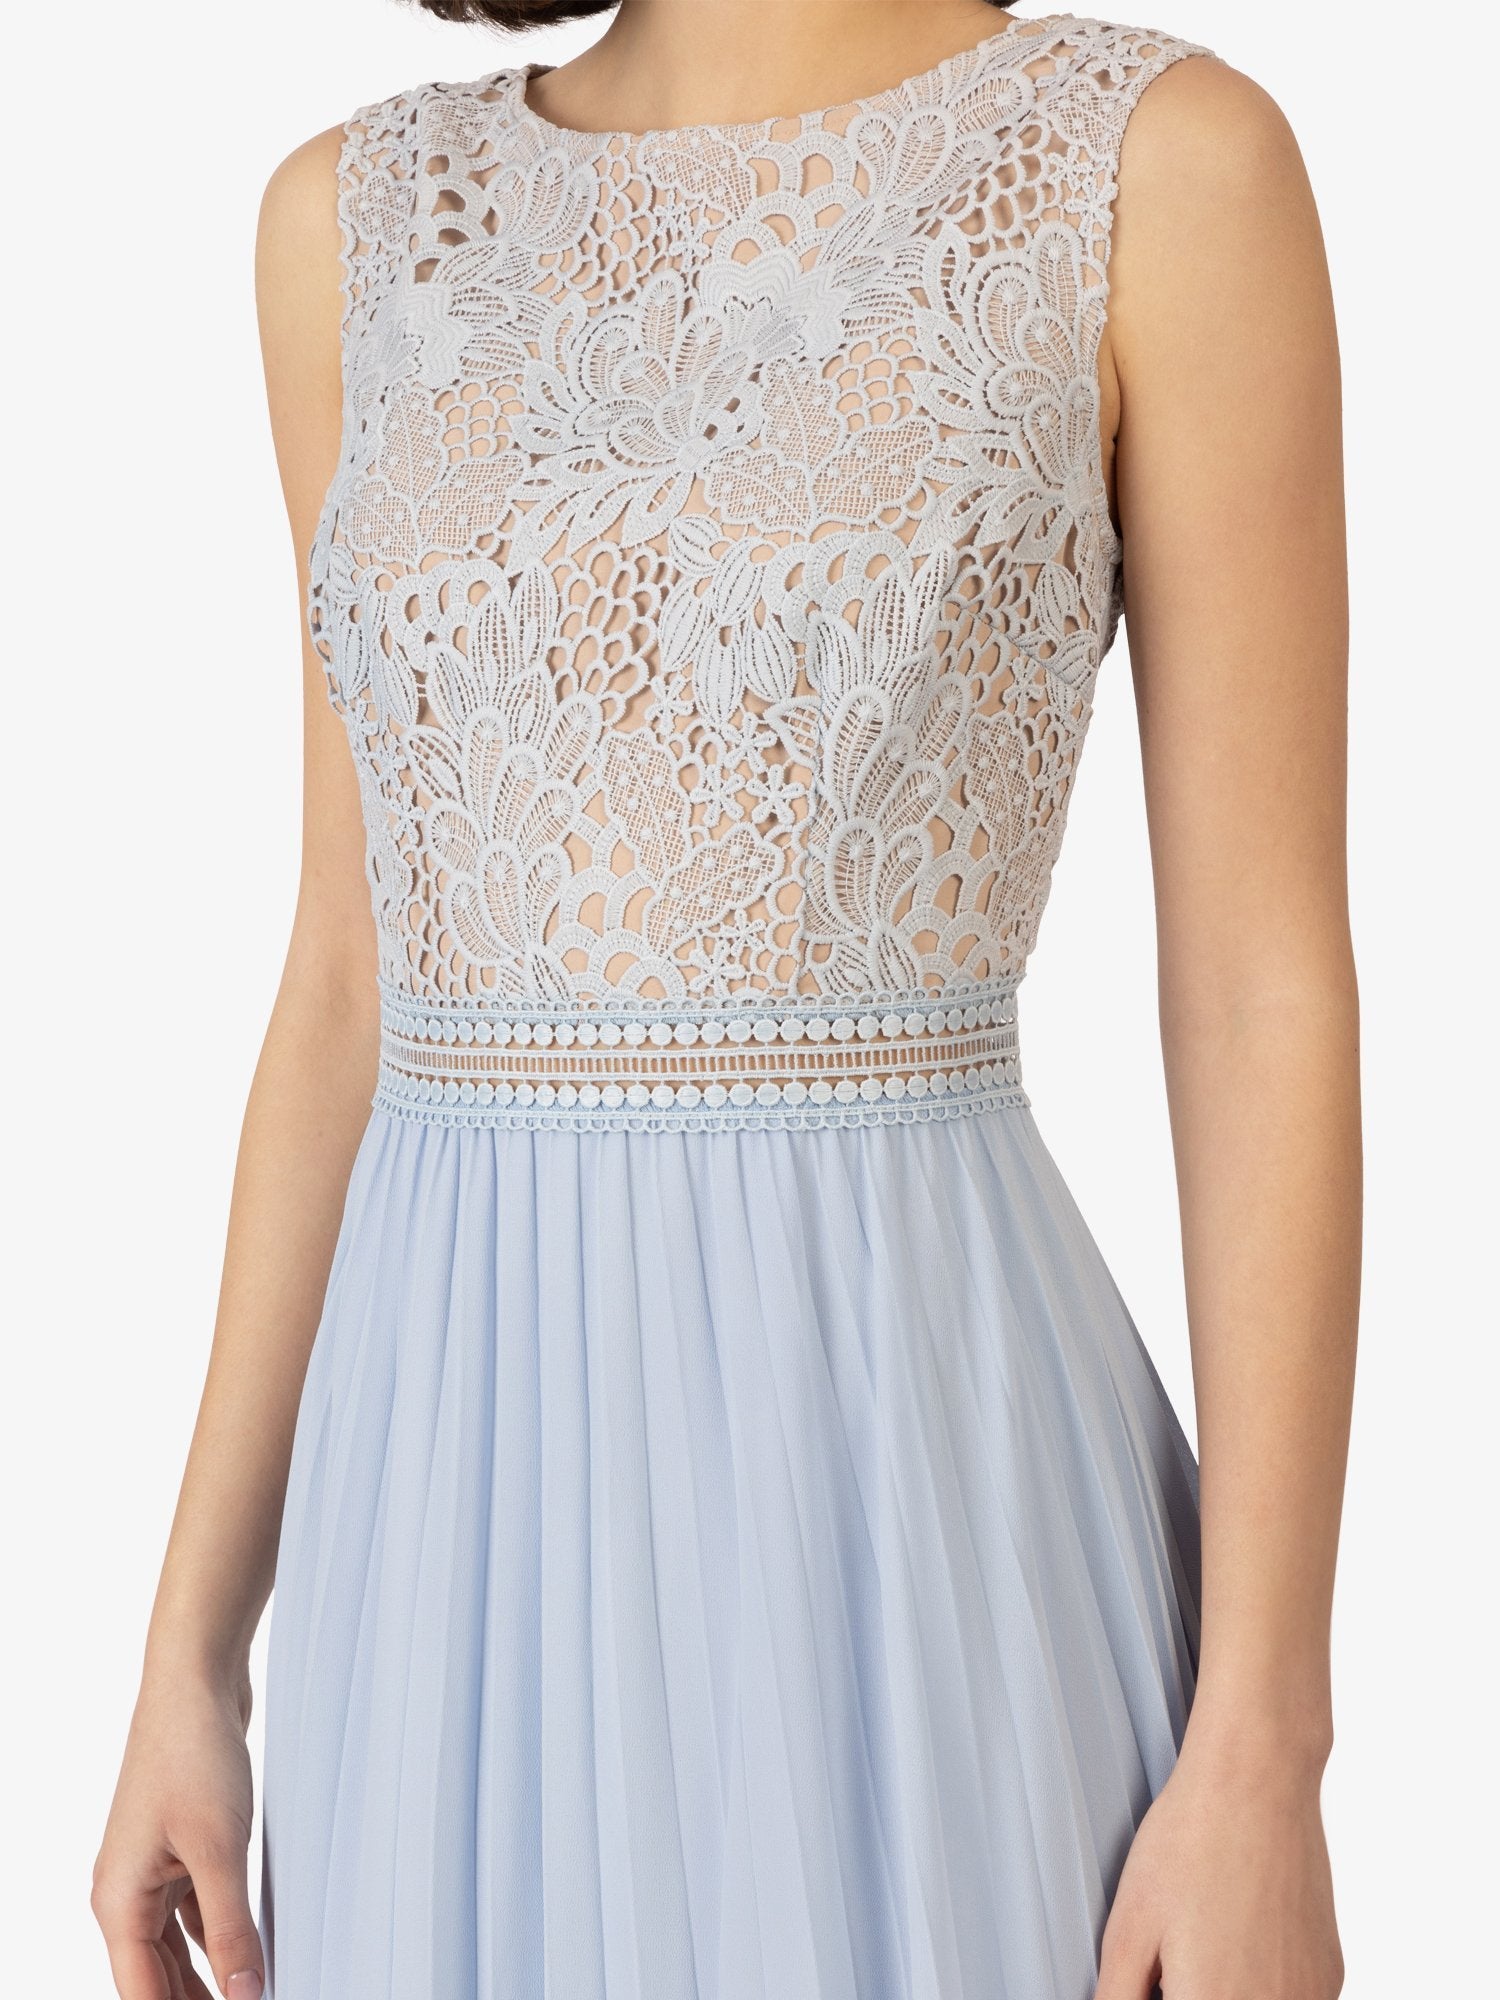 APART Hochzeitskleid mit geblümtem Design | taubenblau